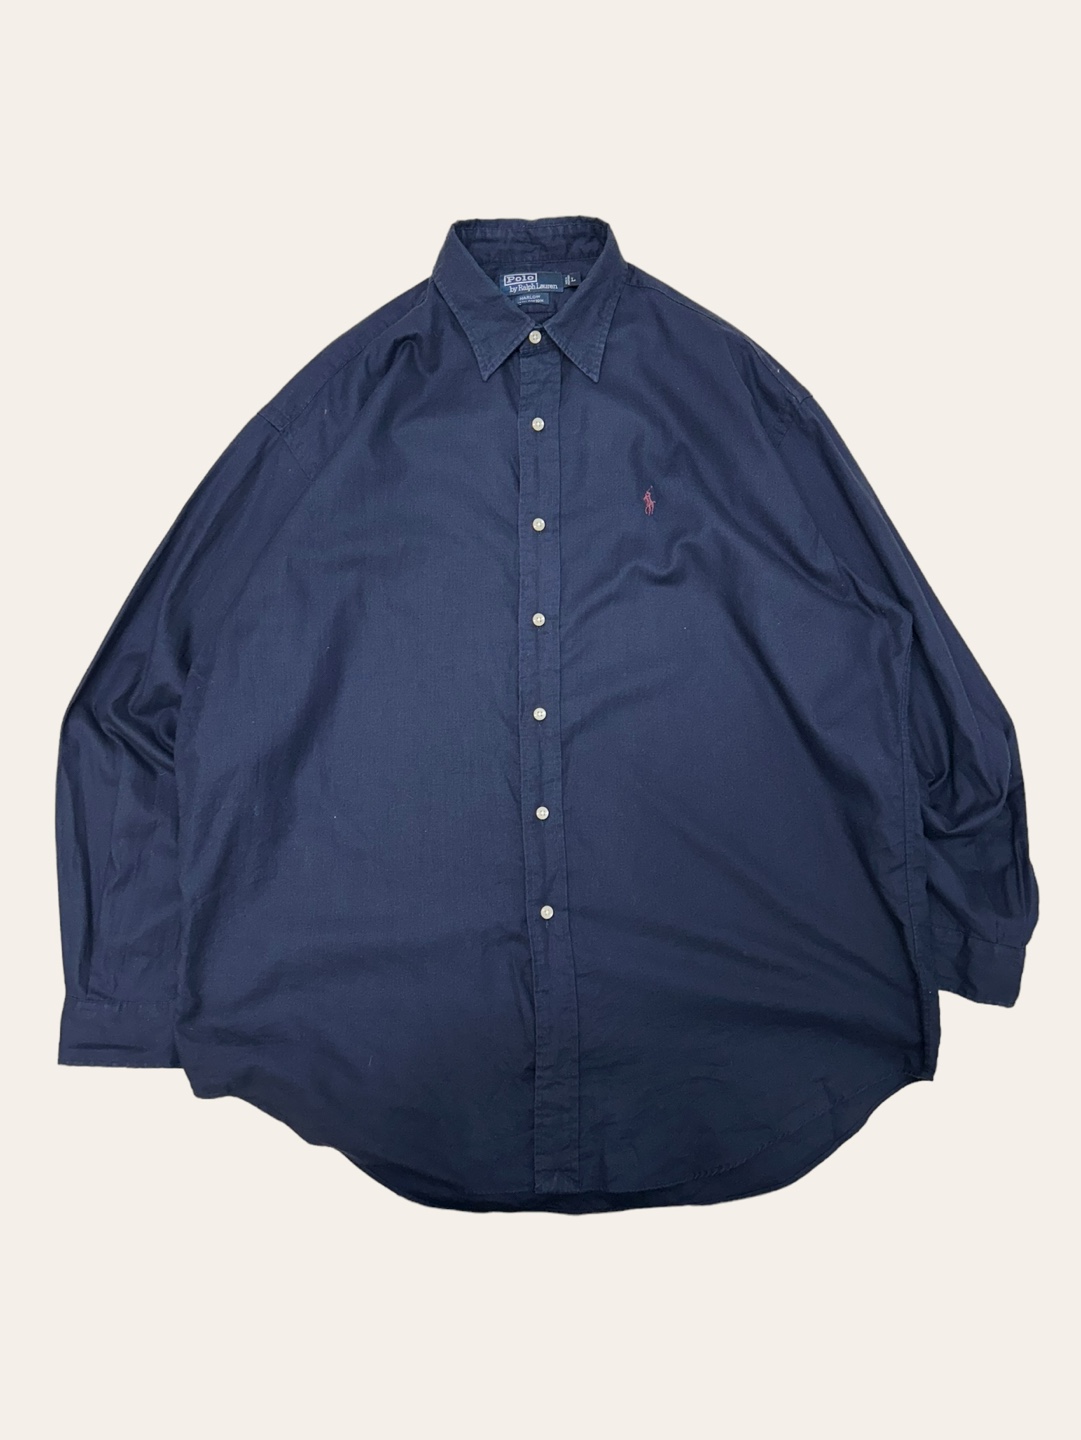 (From USA)Polo ralph lauren navy lightweight solid shirt L